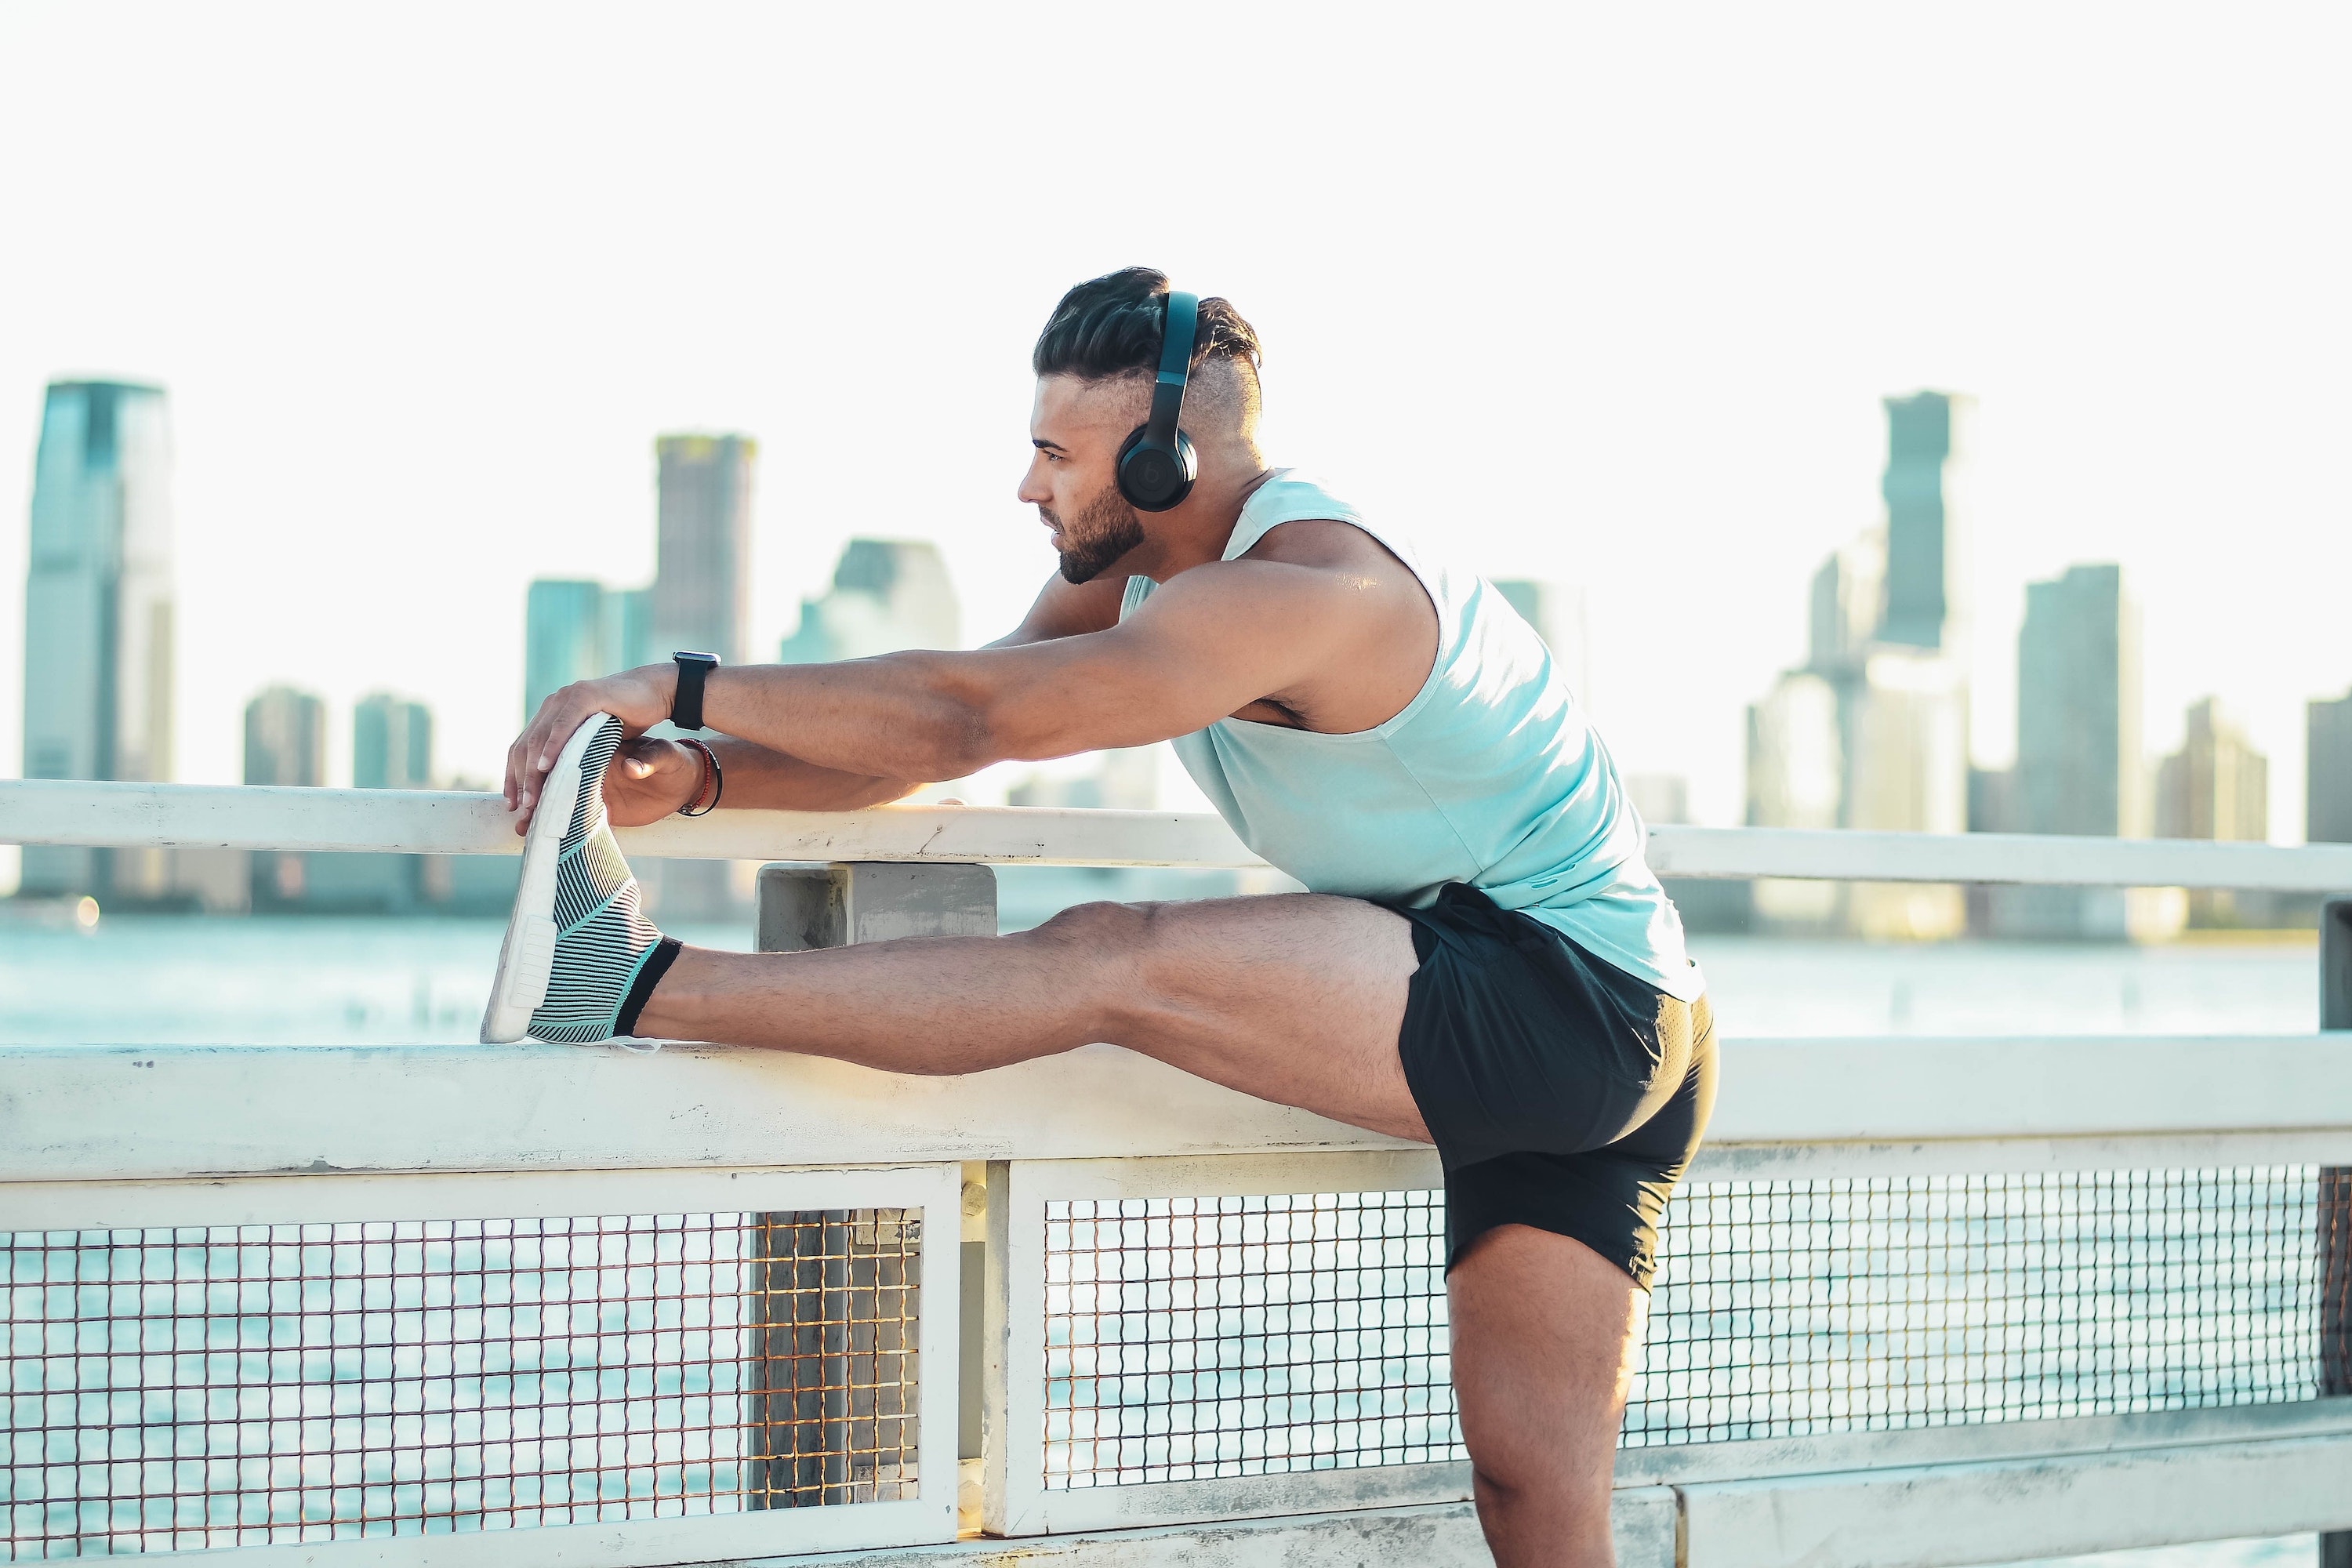 
		5 fantásticos ejercicios para los isquiotibiales con mancuernas que te ayudarán a ganar masa muscular